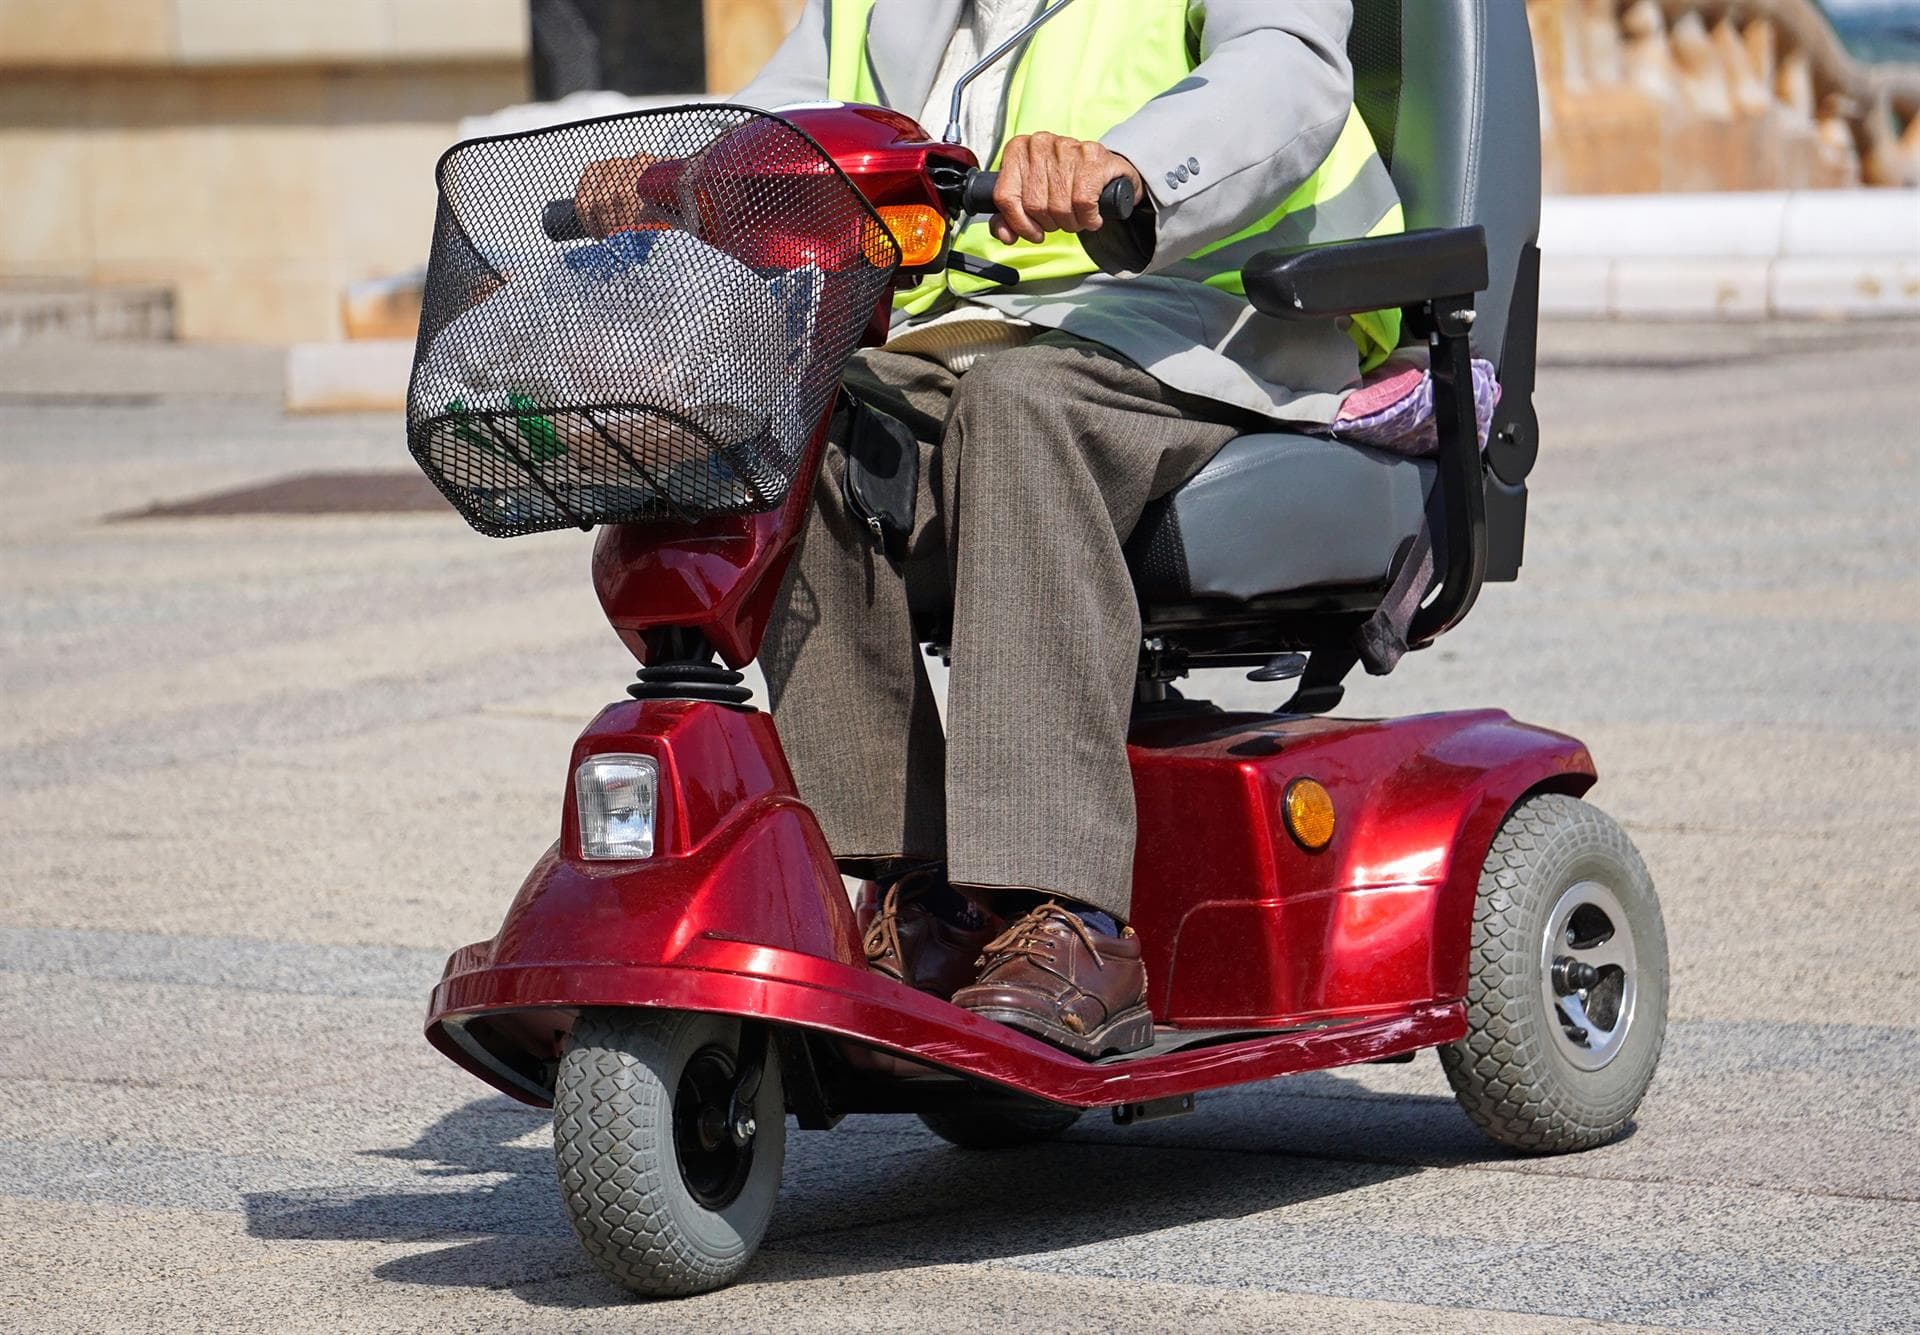  ¿Necesita ayuda para encontrar una batería de scooter o silla de ruedas?